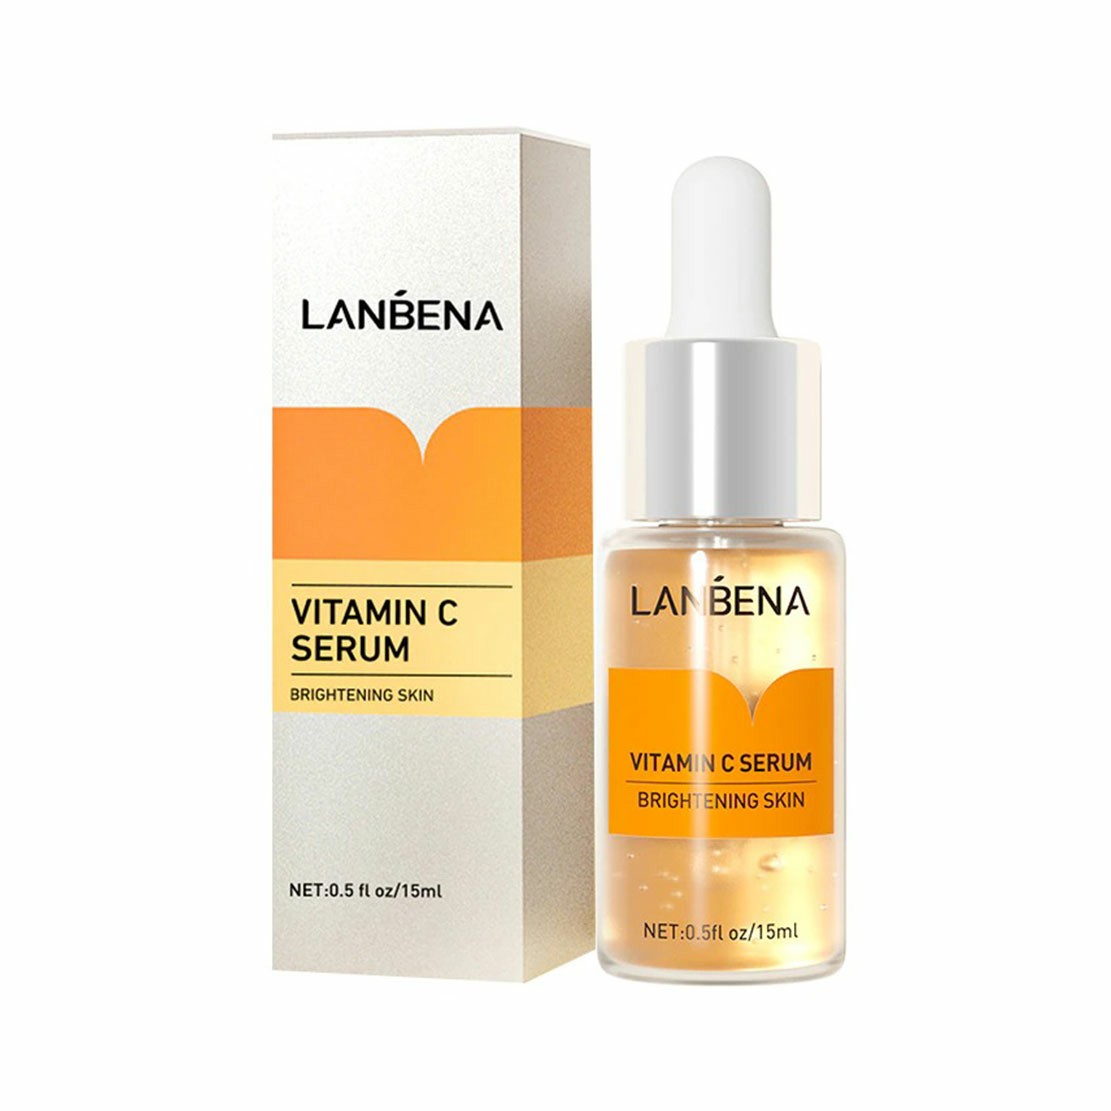 LANBENA Vitamin C Serum Brightening Skin